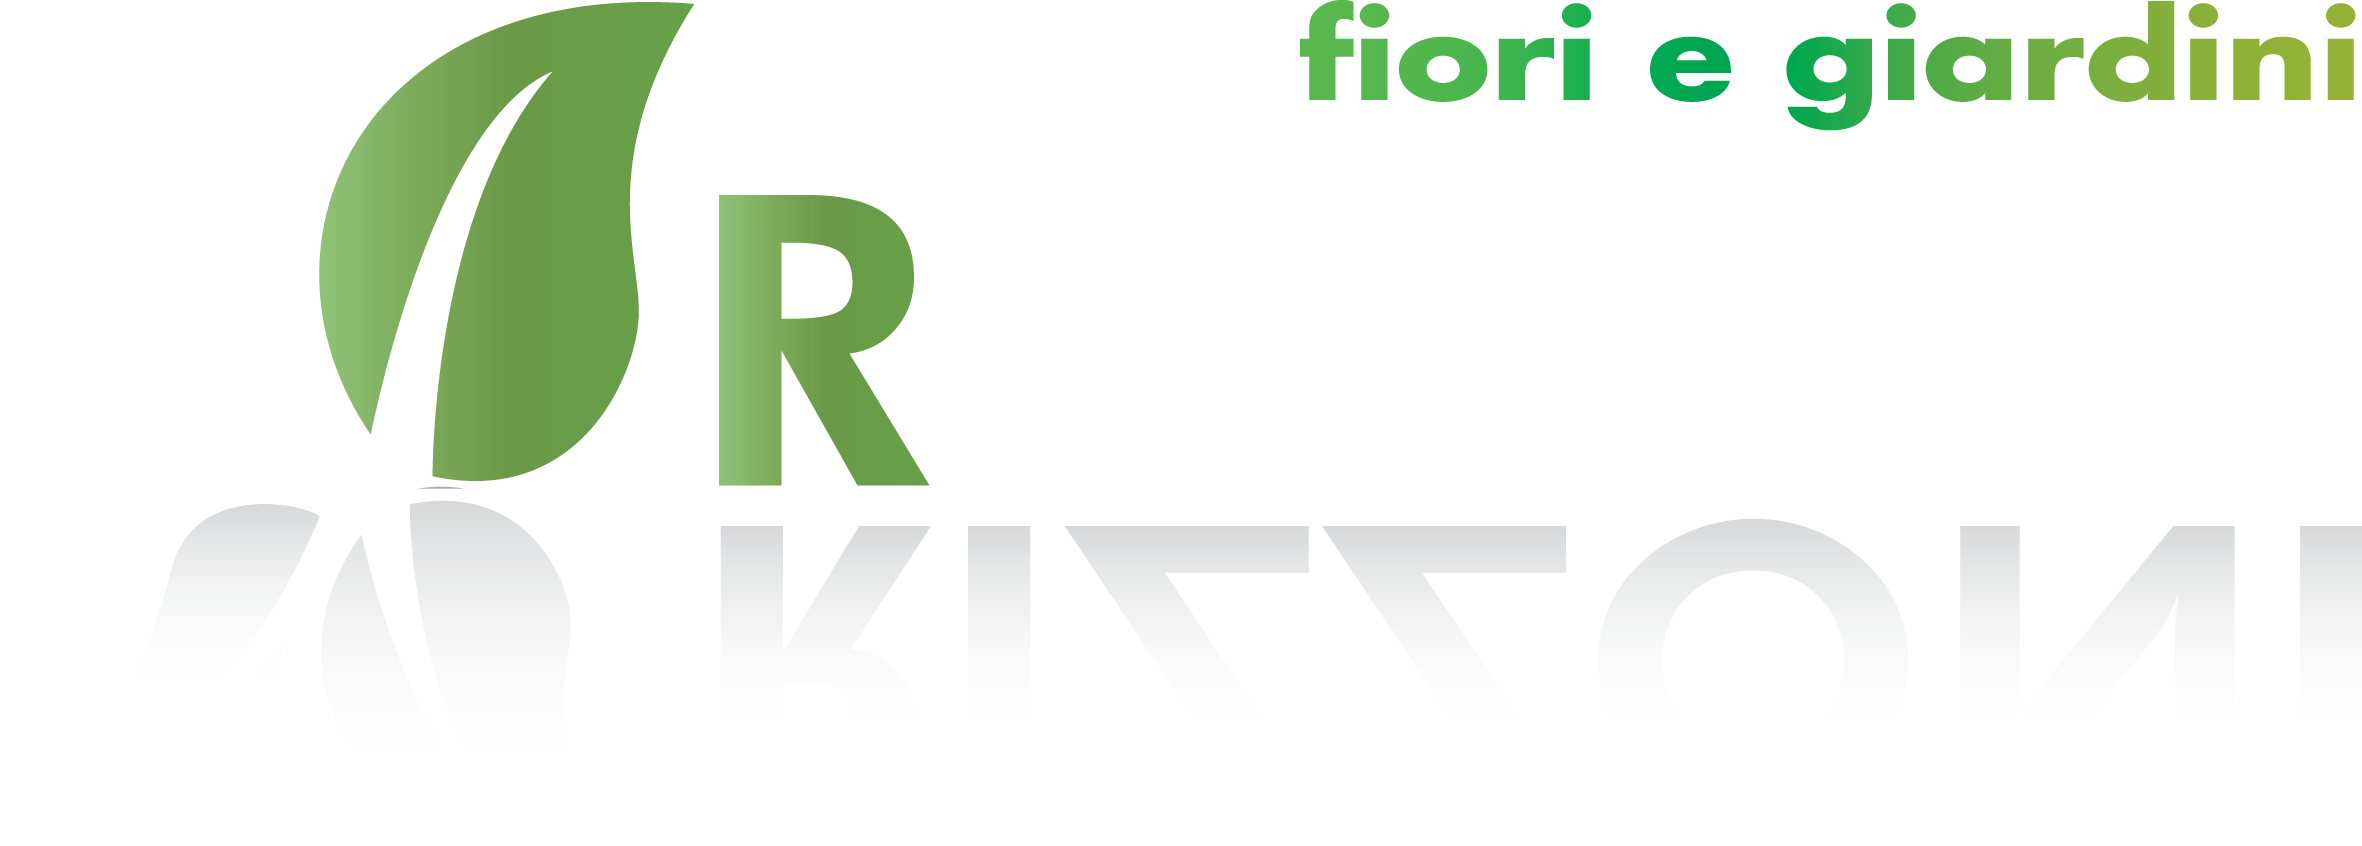 Rizzoni - Fiori & Giardini